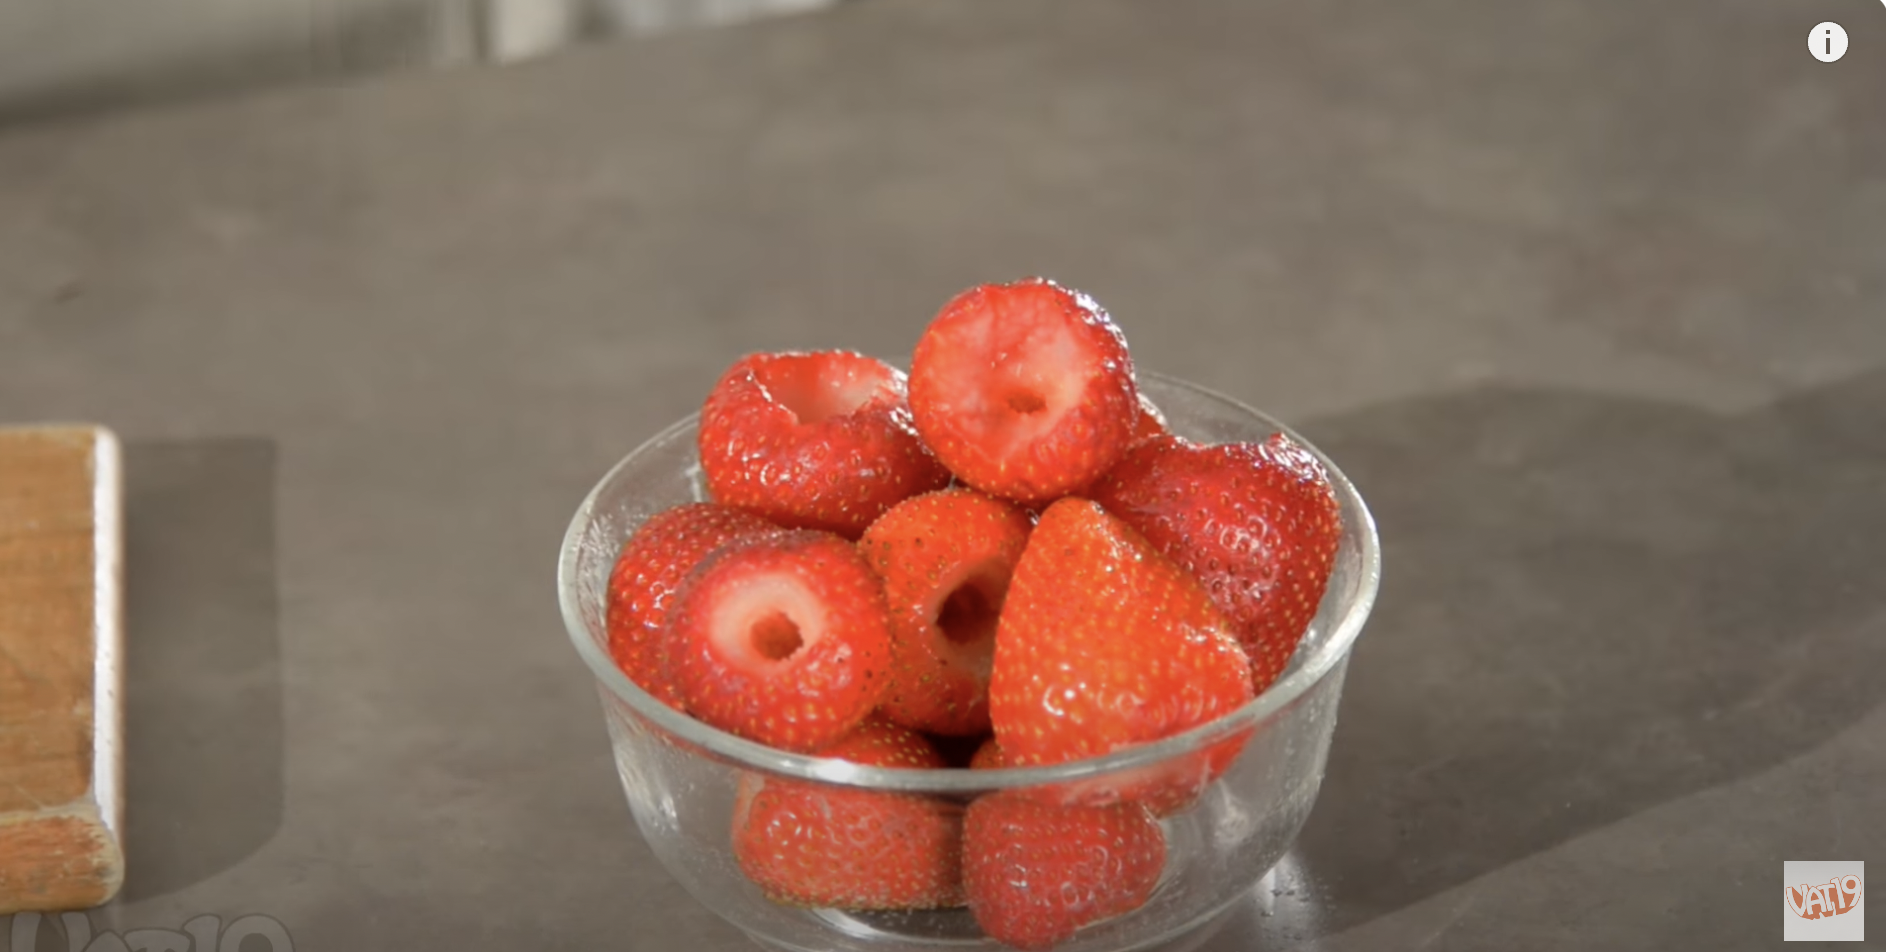 Fresas procesadas con el descorazonador de fresas. | Fuente: Youtube/Vat19